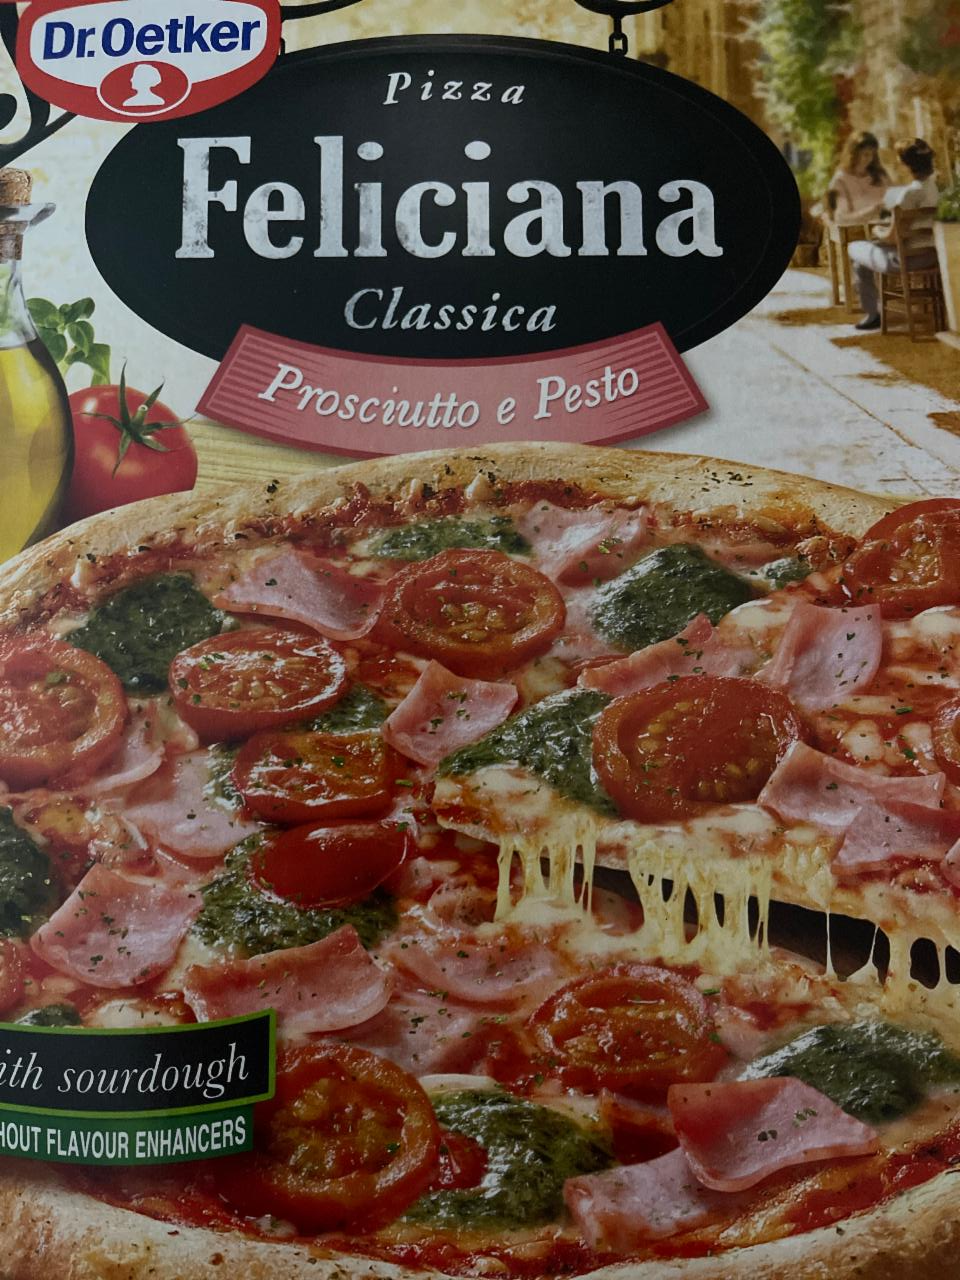 Fotografie - Pizza Feliciana Classica Prosciutto e Pesto Dr.Oetker